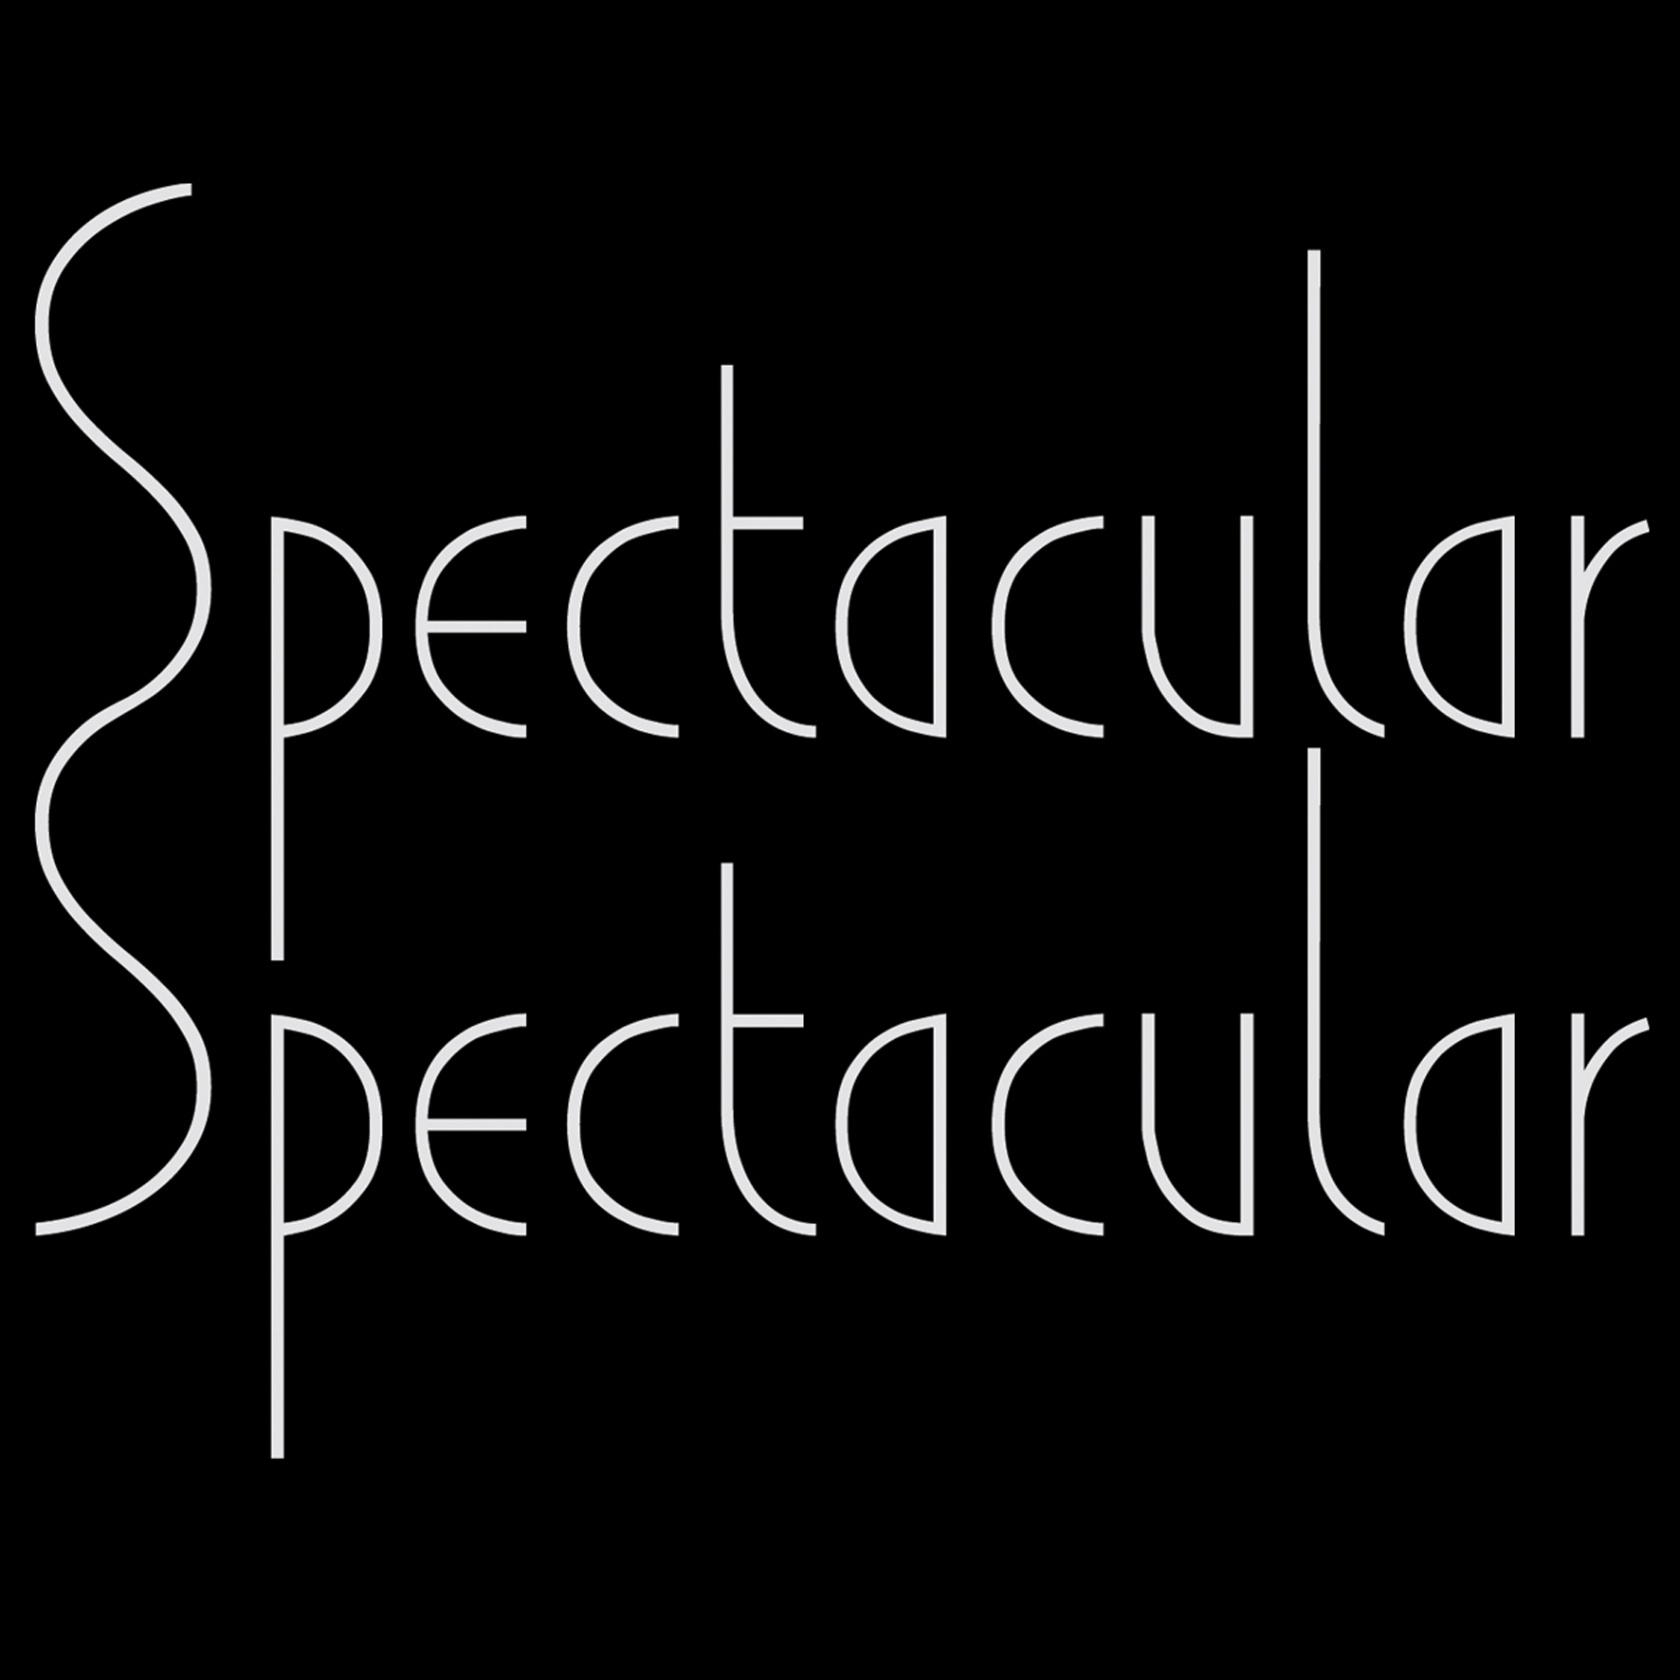 spectacular_spectacular_invert